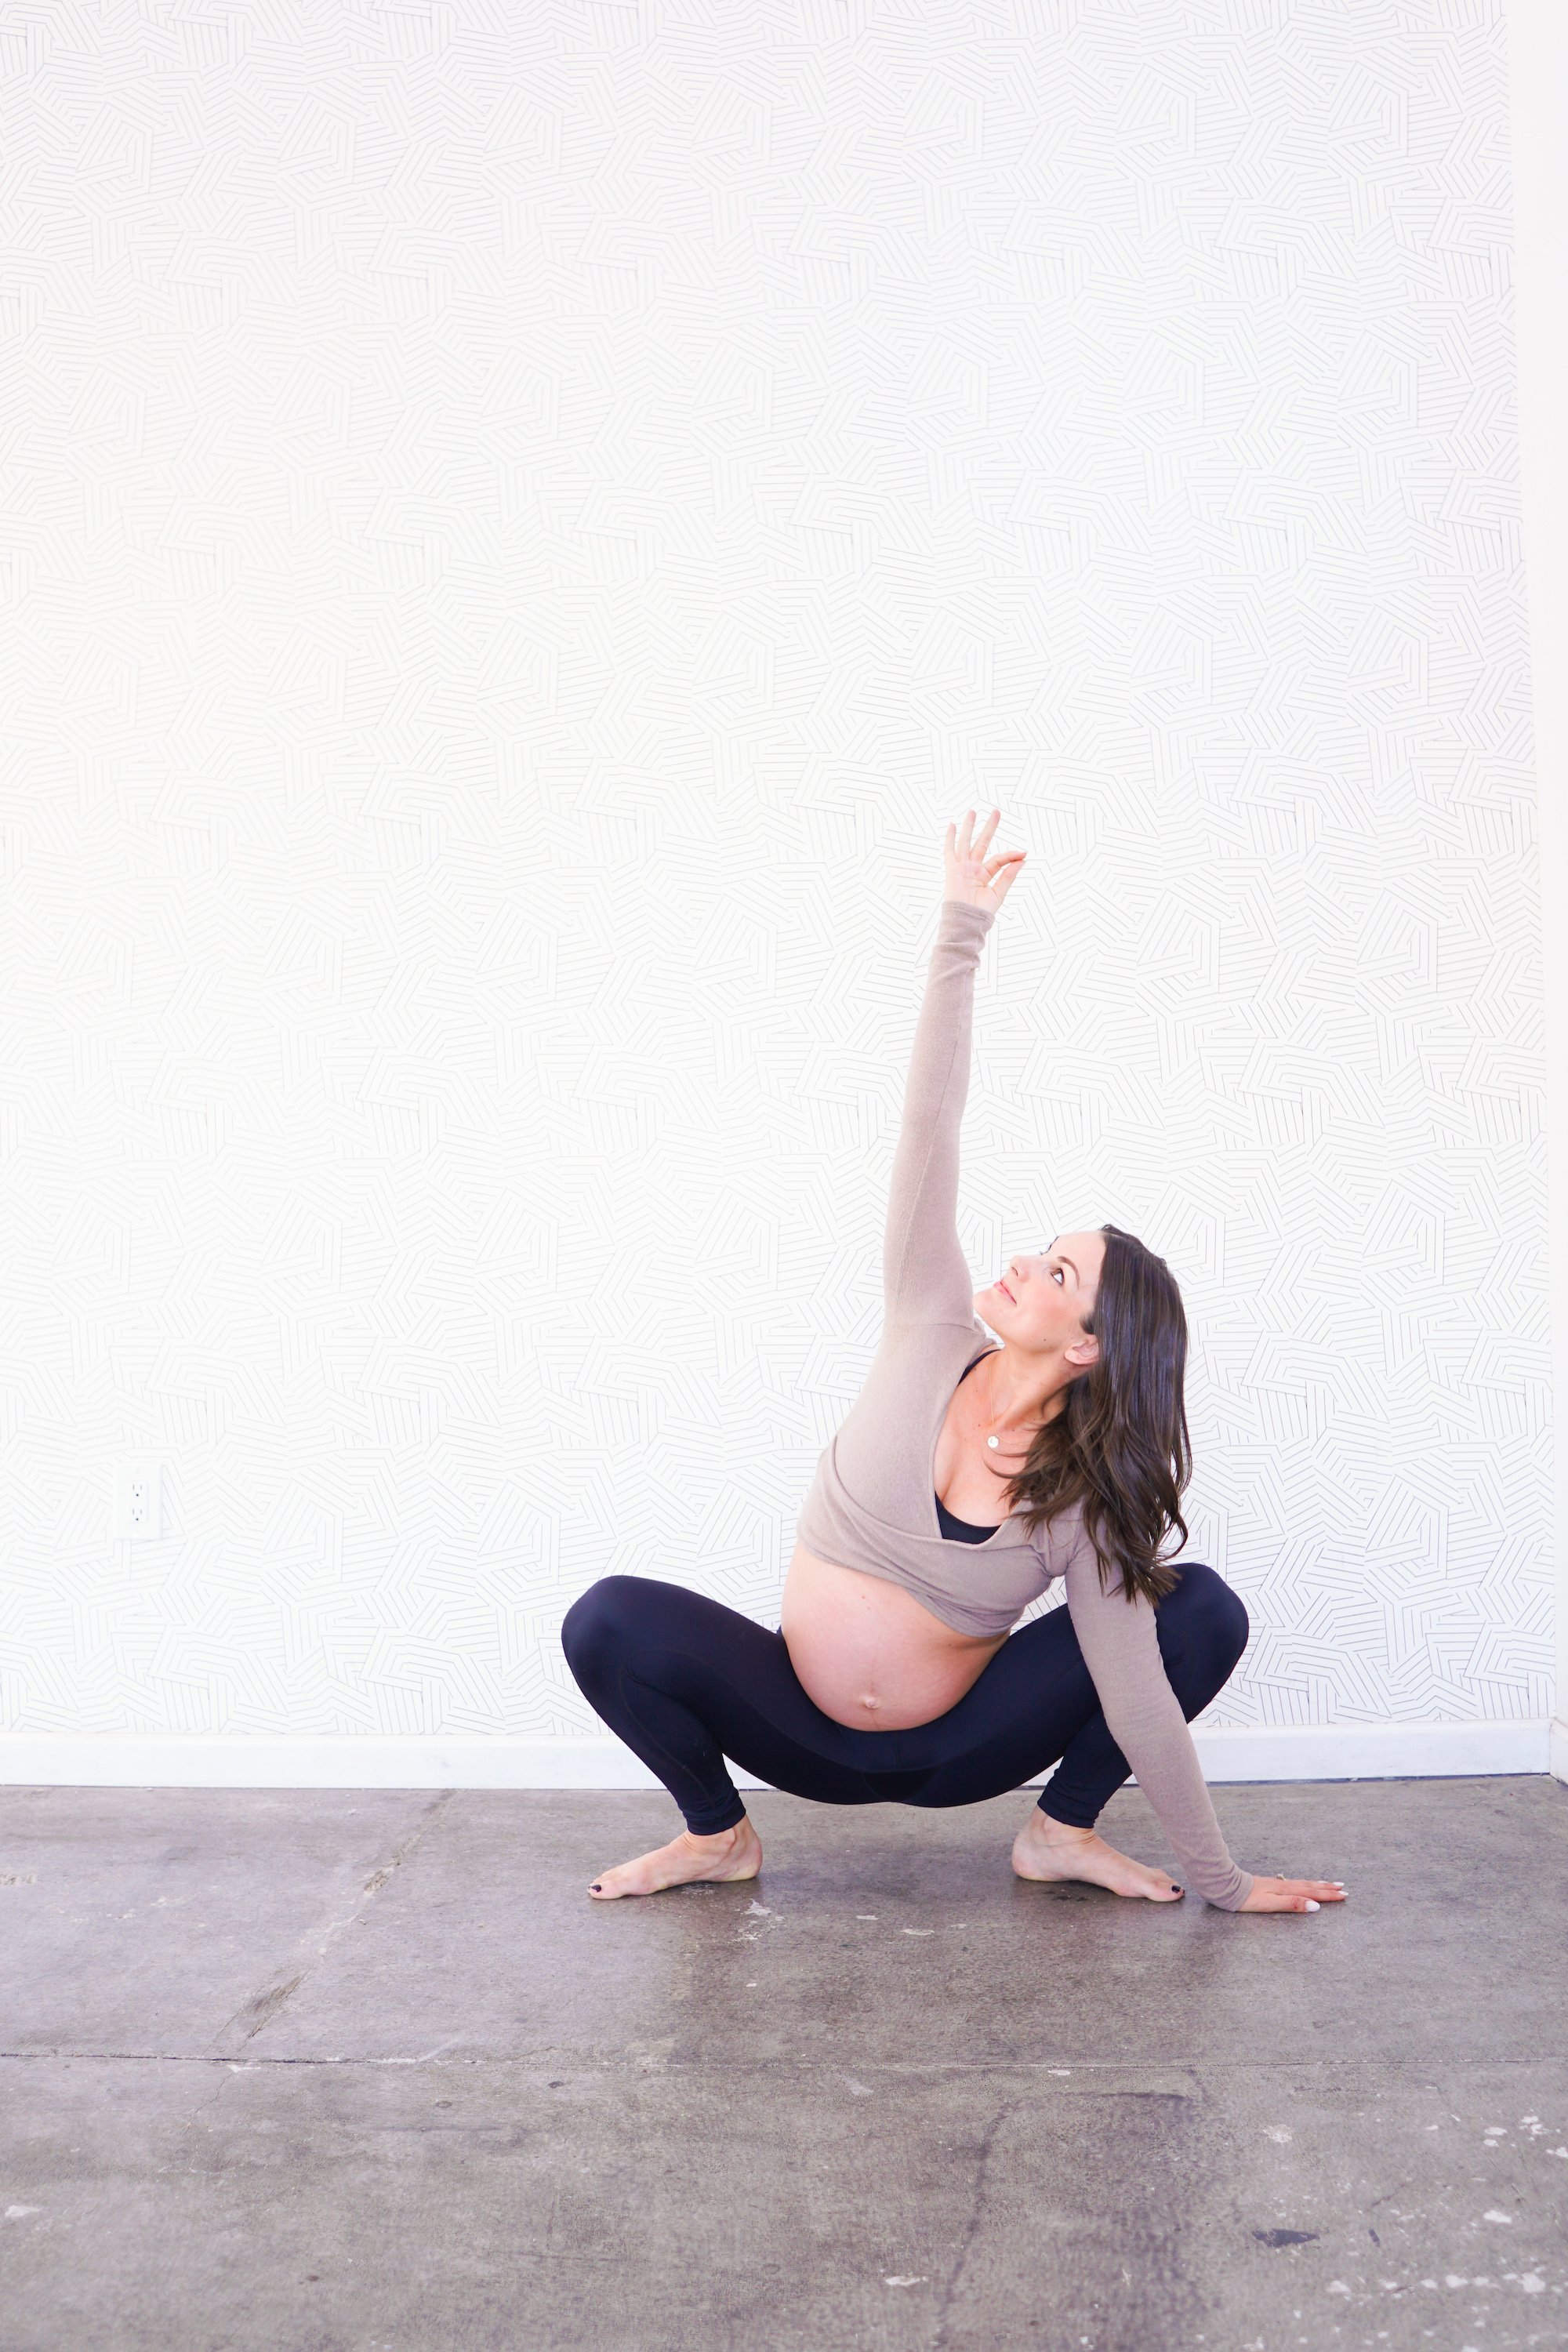 Top more than 124 prenatal yoga poses 3rd trimester super hot ...